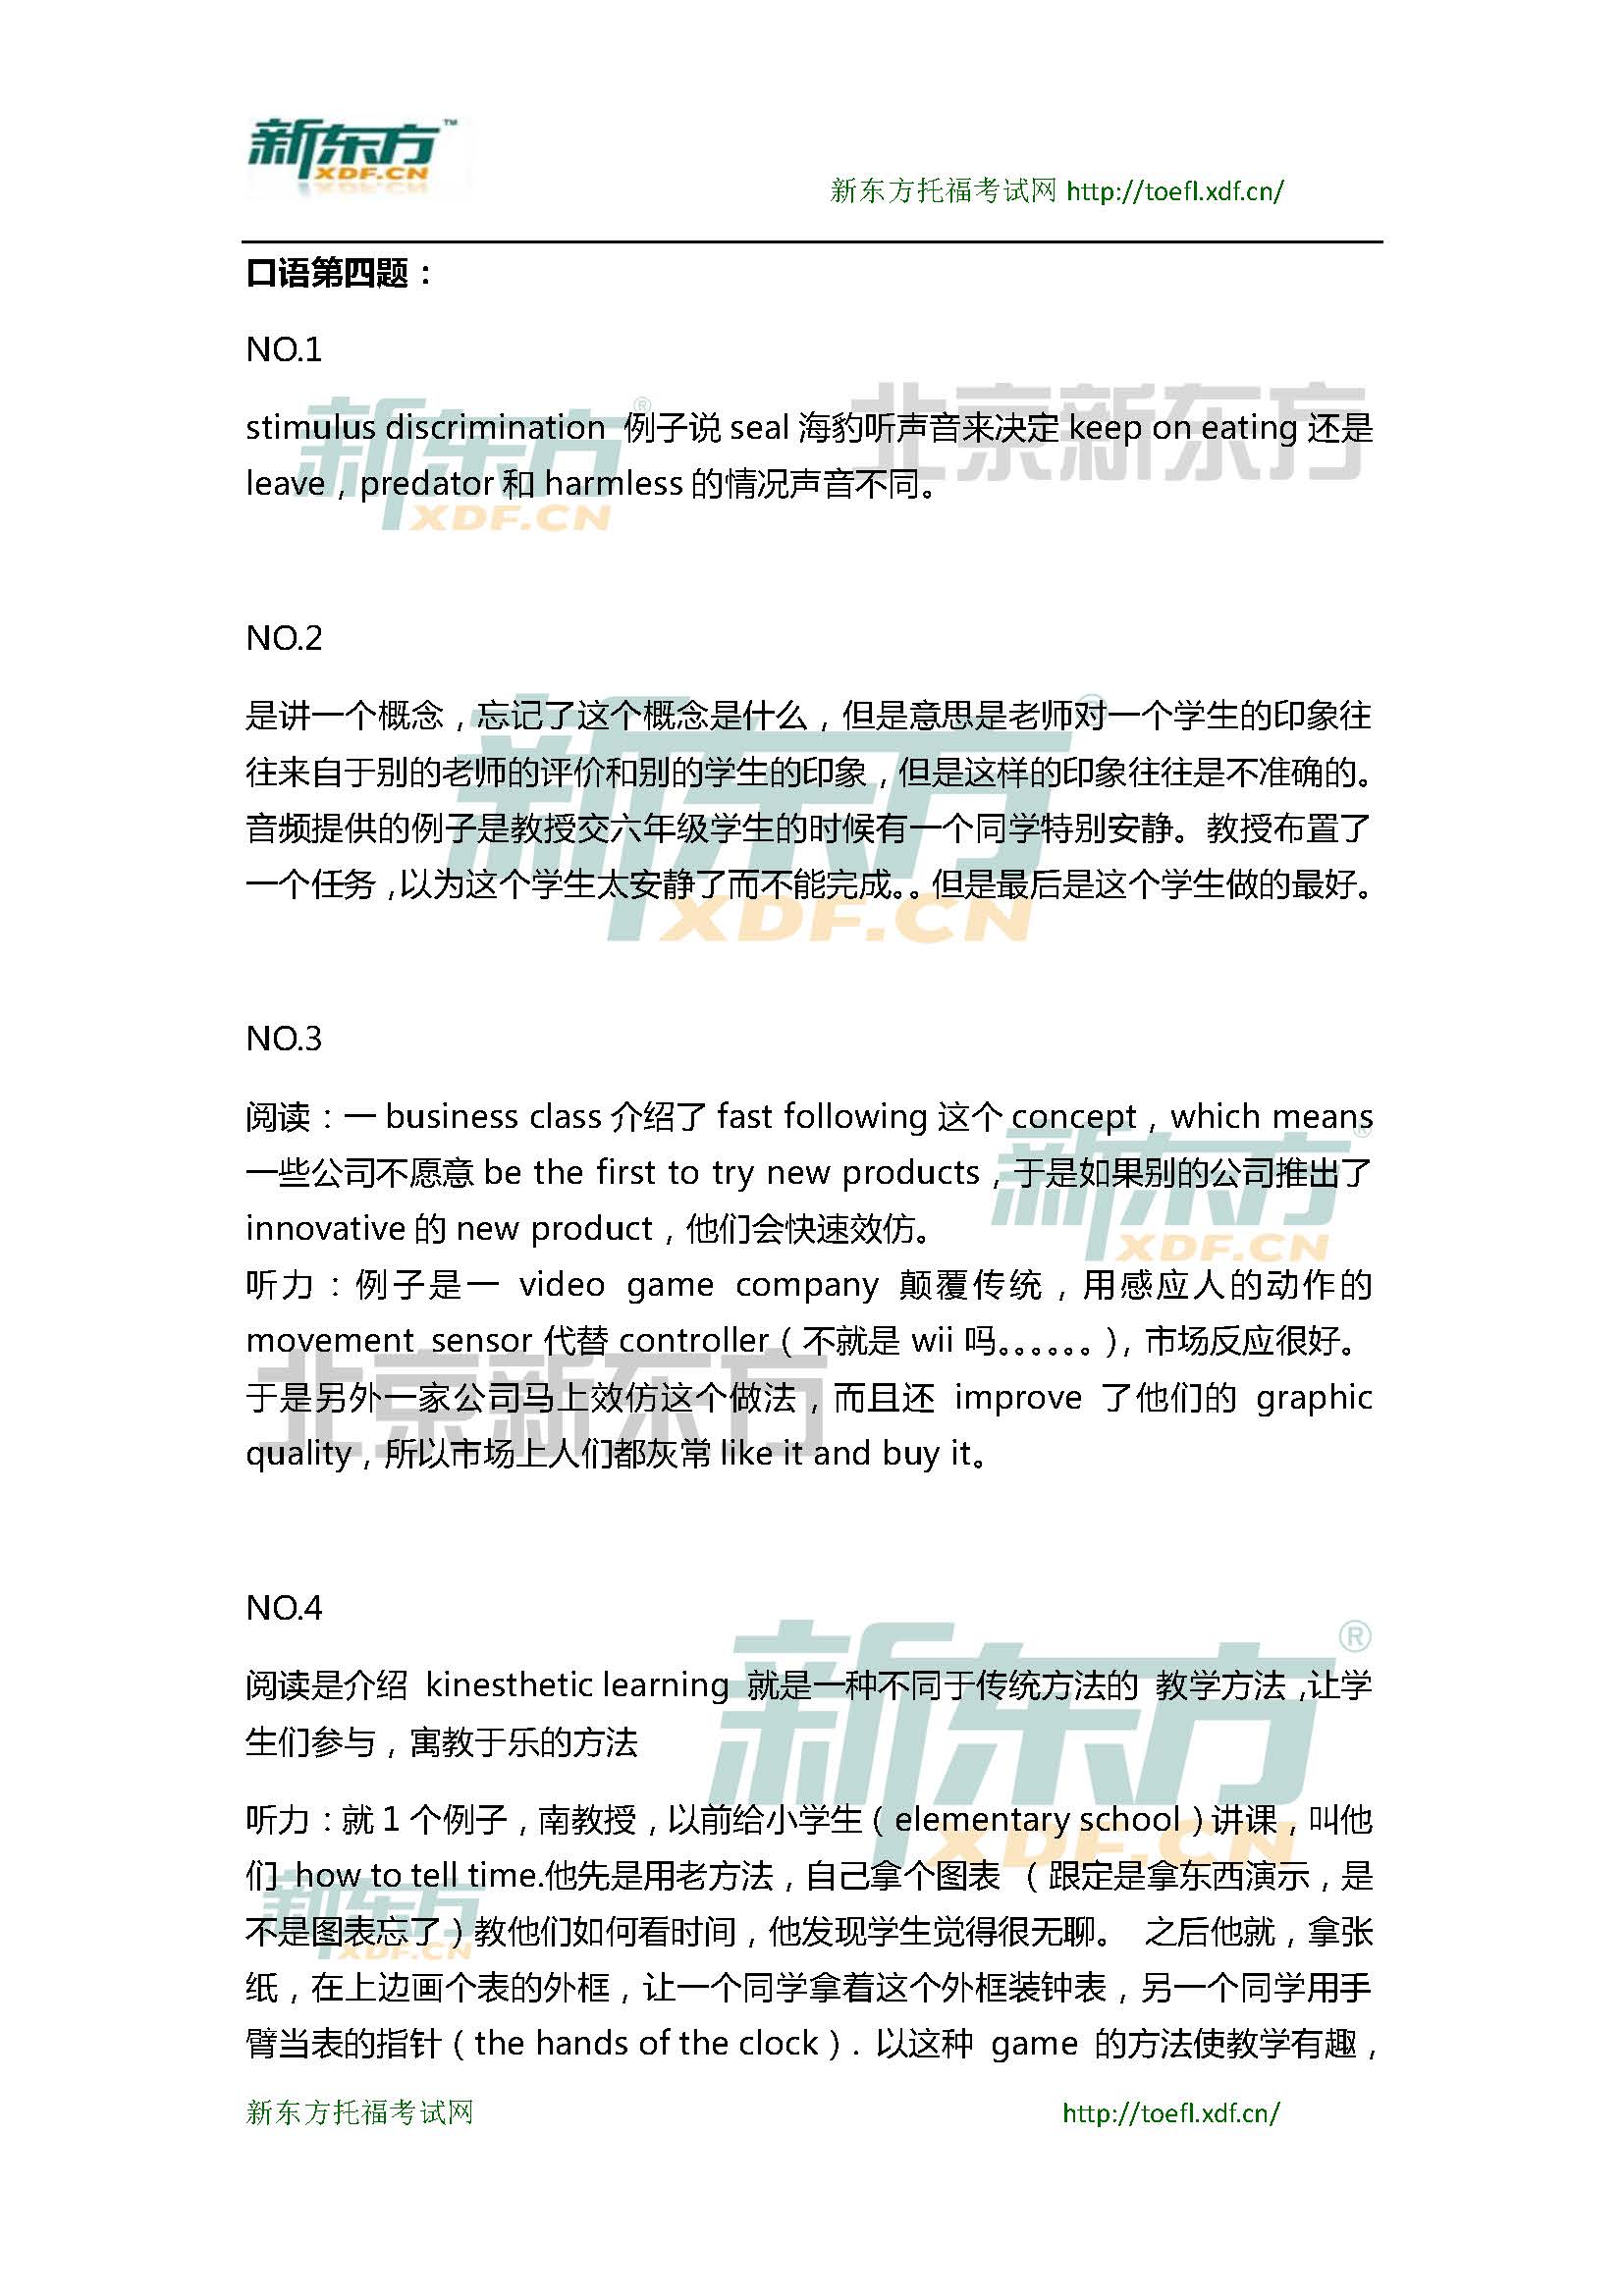 2015年4月12日托福口语超级小范围预测(6套题)